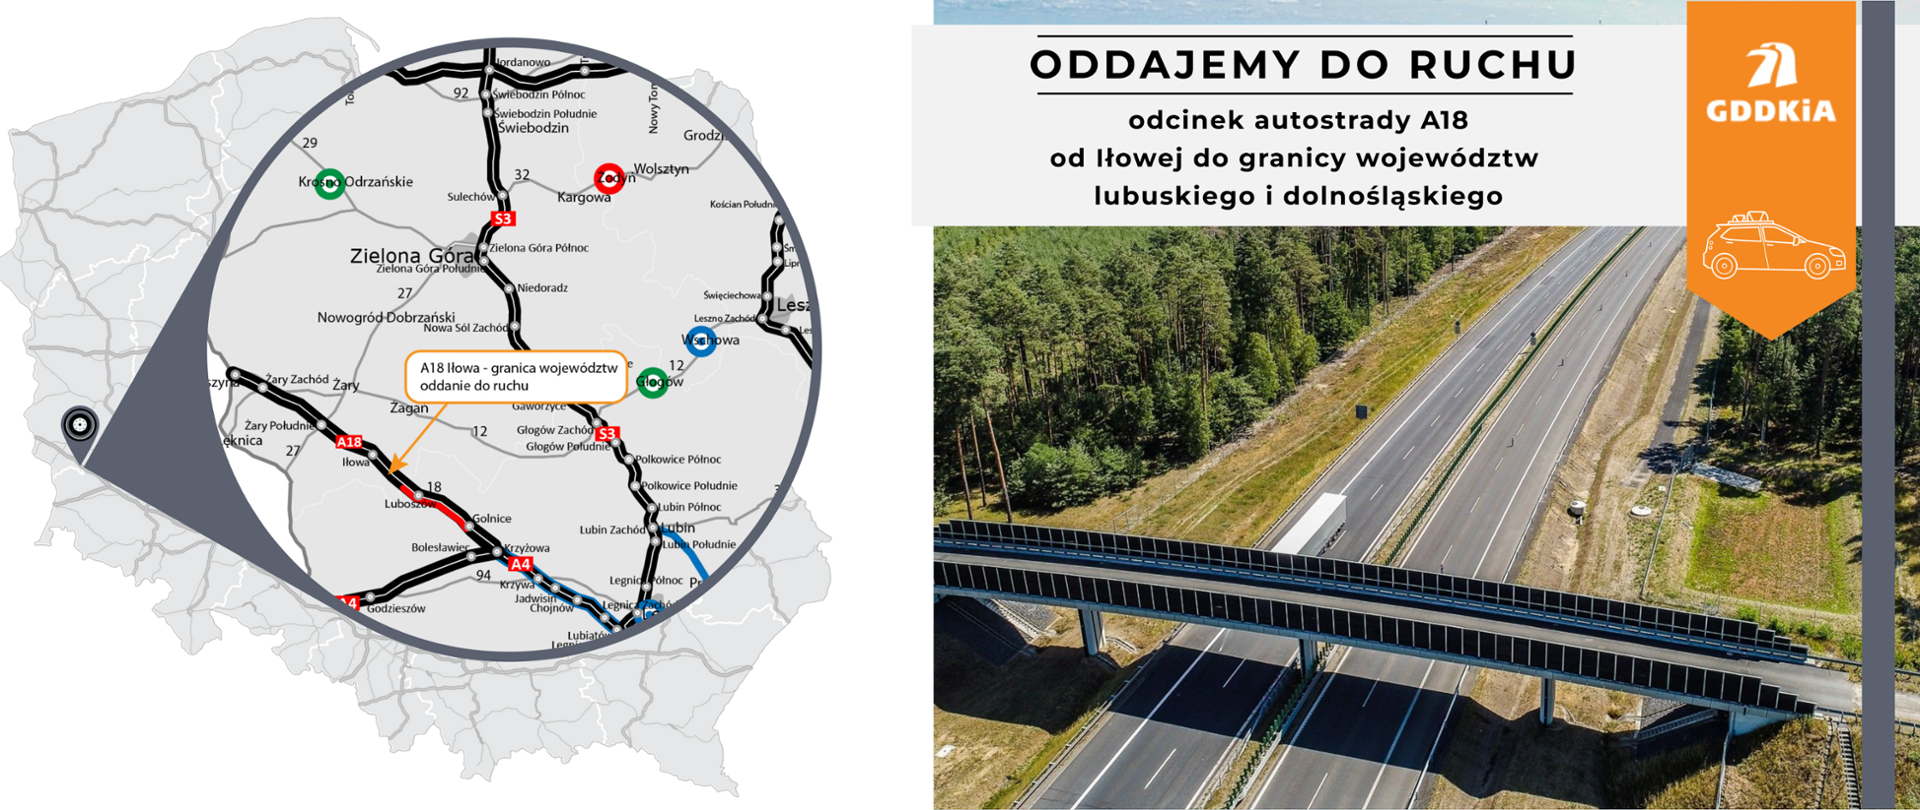 Infografika informująca o oddaniu do ruchu odcinka autostrady A18 między Iłową a granicą województw. Po lewej kontur mapy Polski z zaznaczonym oddawanym odcinkiem do ruchu. Po prawej zdjęcie autostrady. Dwie jezdnie po dwa pasy ruchu w obu kierunkach biegnące przez lat. Nad drogą przechodzi wiadukt drogi lokalnej.